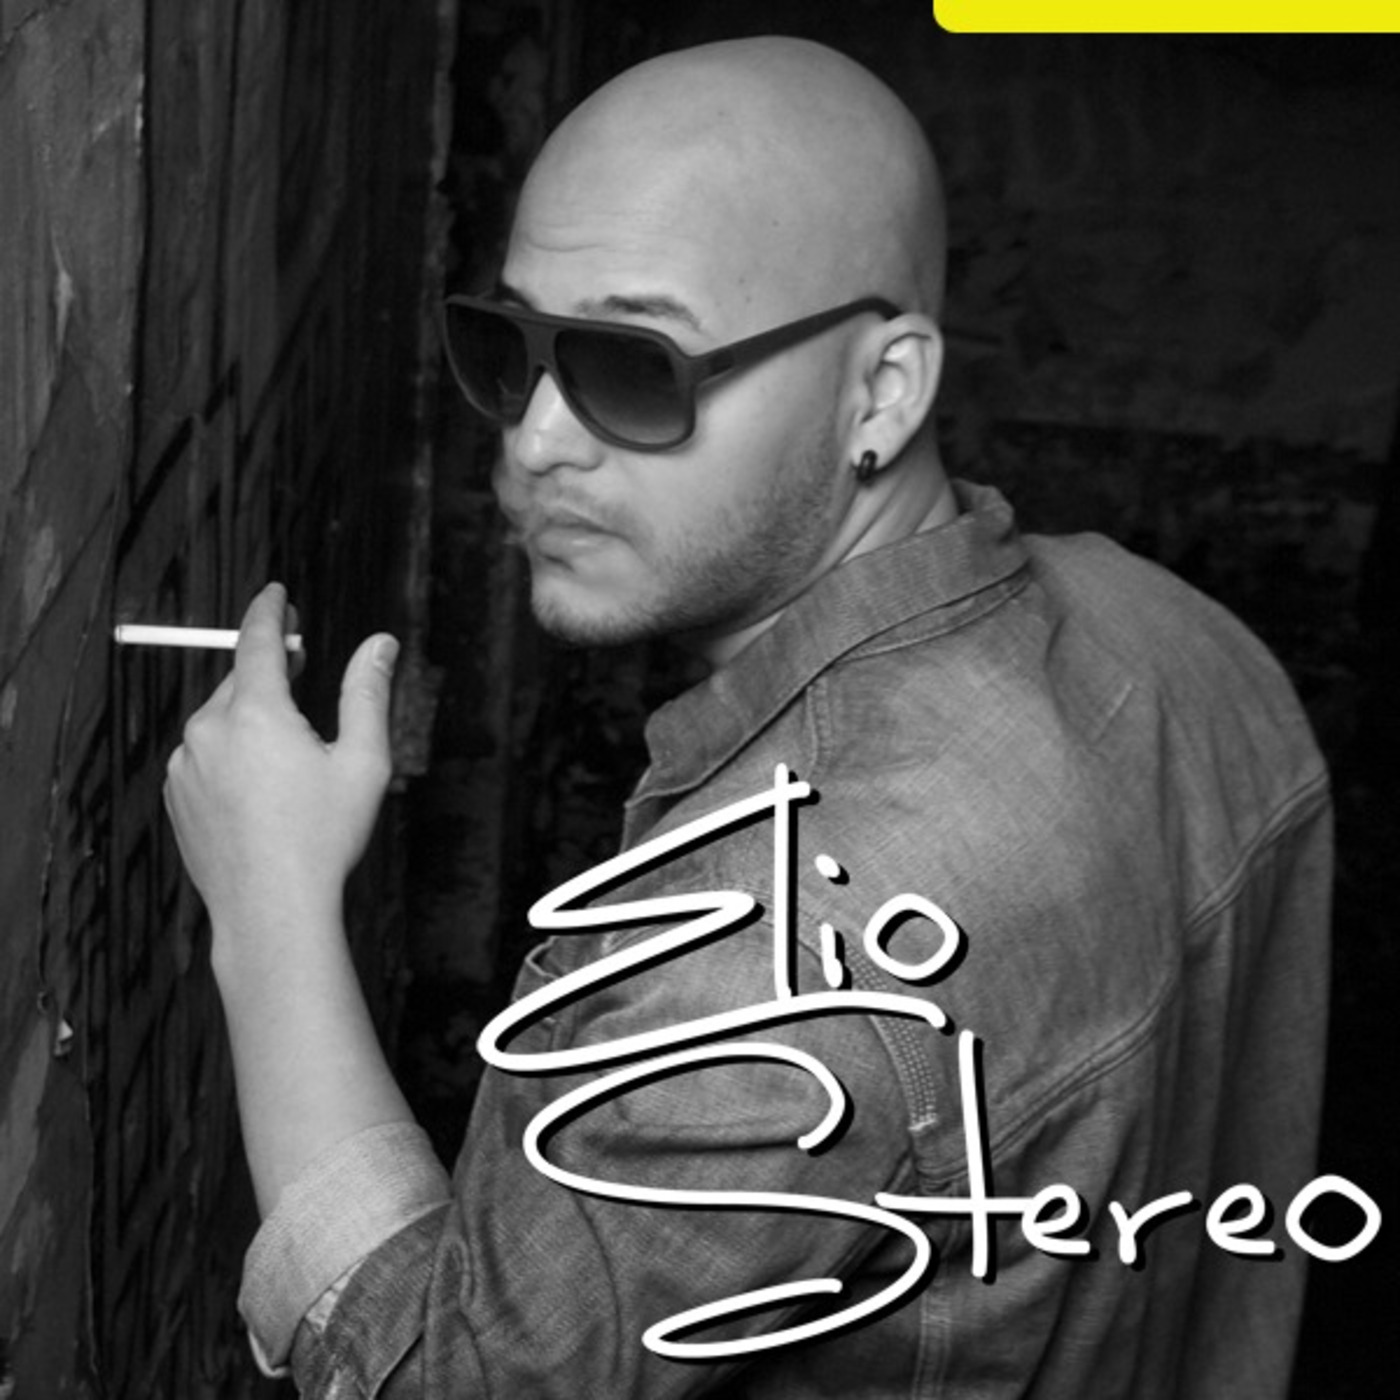 Elio Stereo